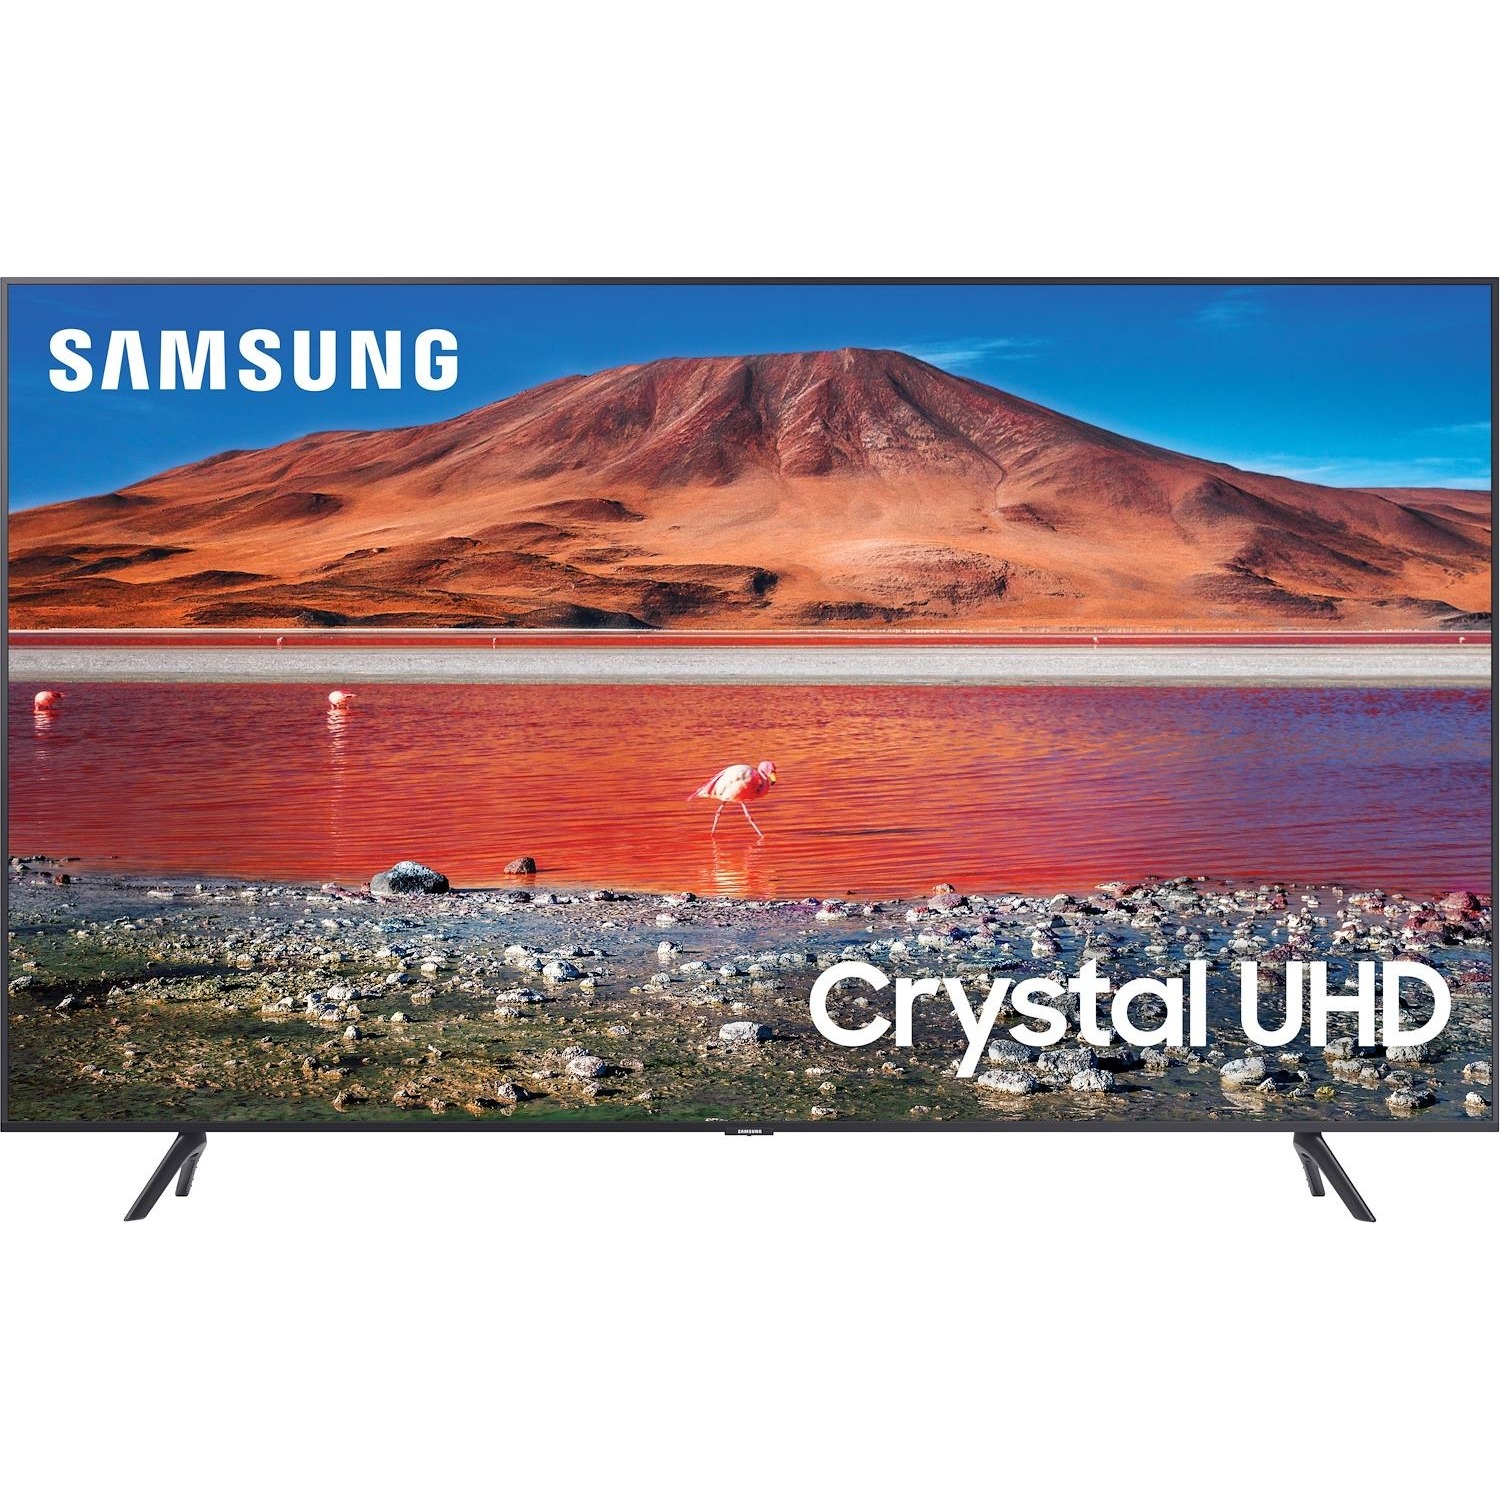 Immagine per TV LED Smart 4K UHD Samsung 75TU7170 da DIMOStore